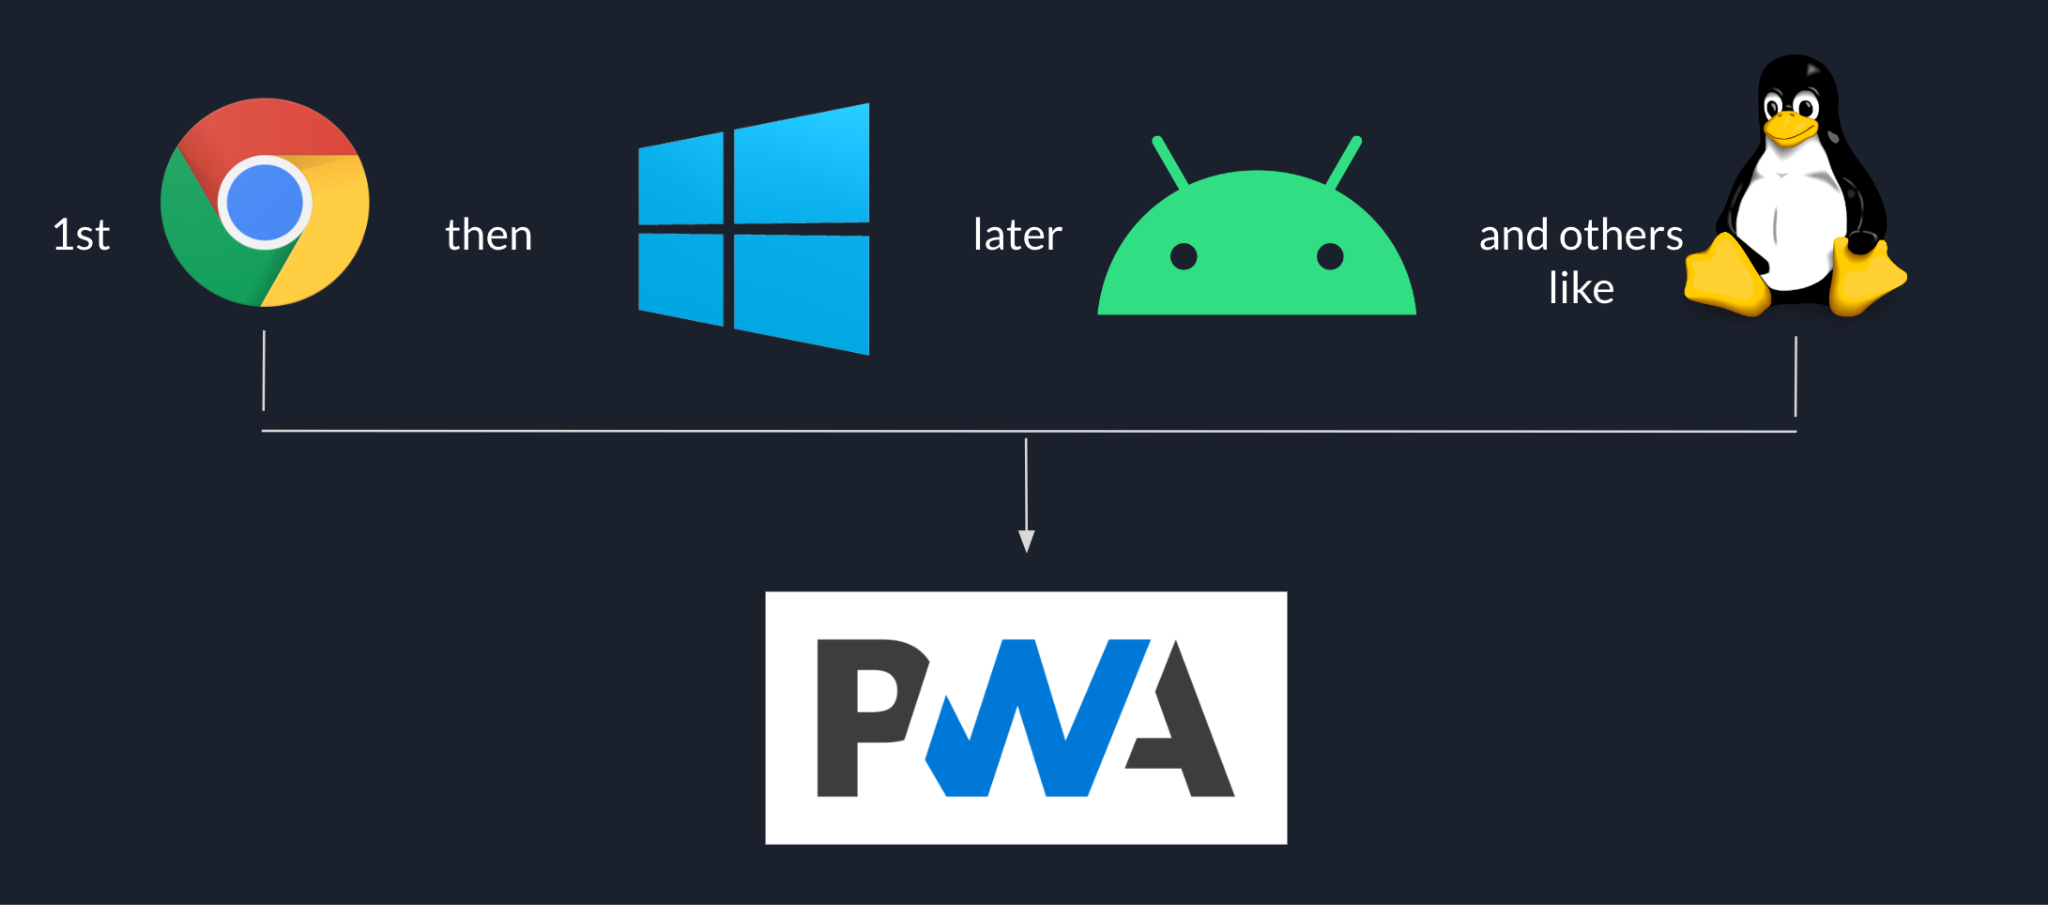 Sequência de lançamento do Goodnotes começando com o Chrome, seguido pelo Windows, seguido pelo Android e por outras plataformas, como o Linux, no final, tudo com base no PWA.